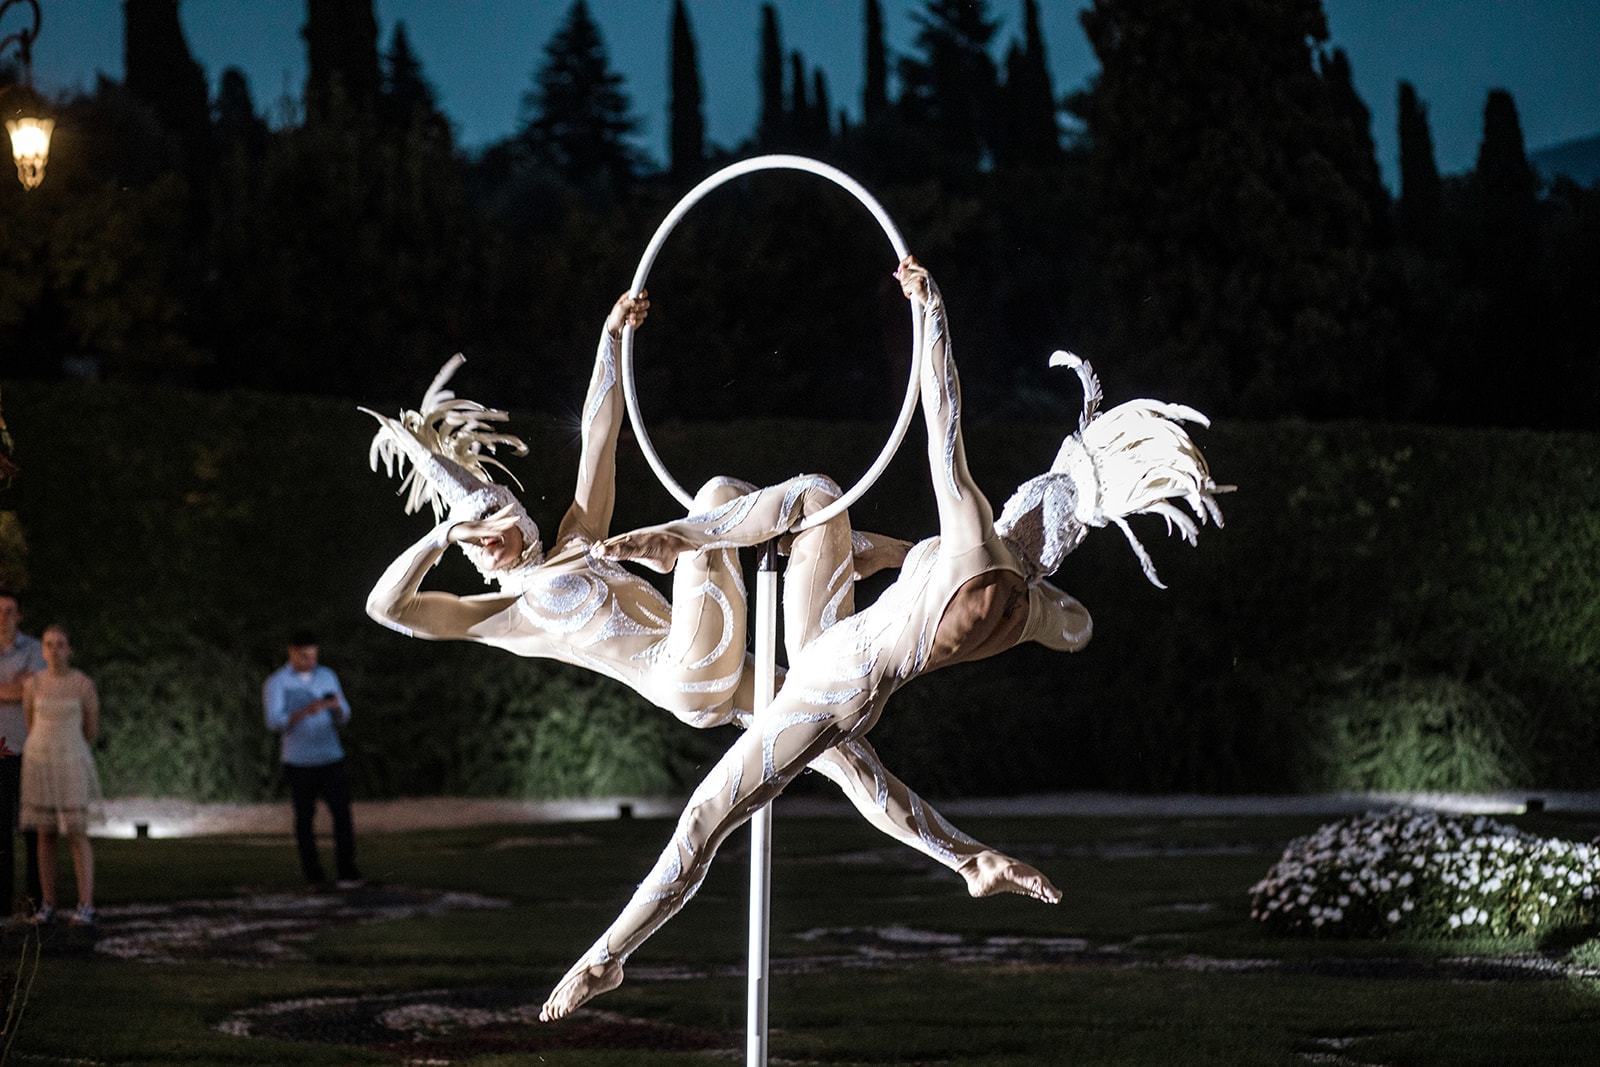 Acrobats perform at Villa Sola Cabiati